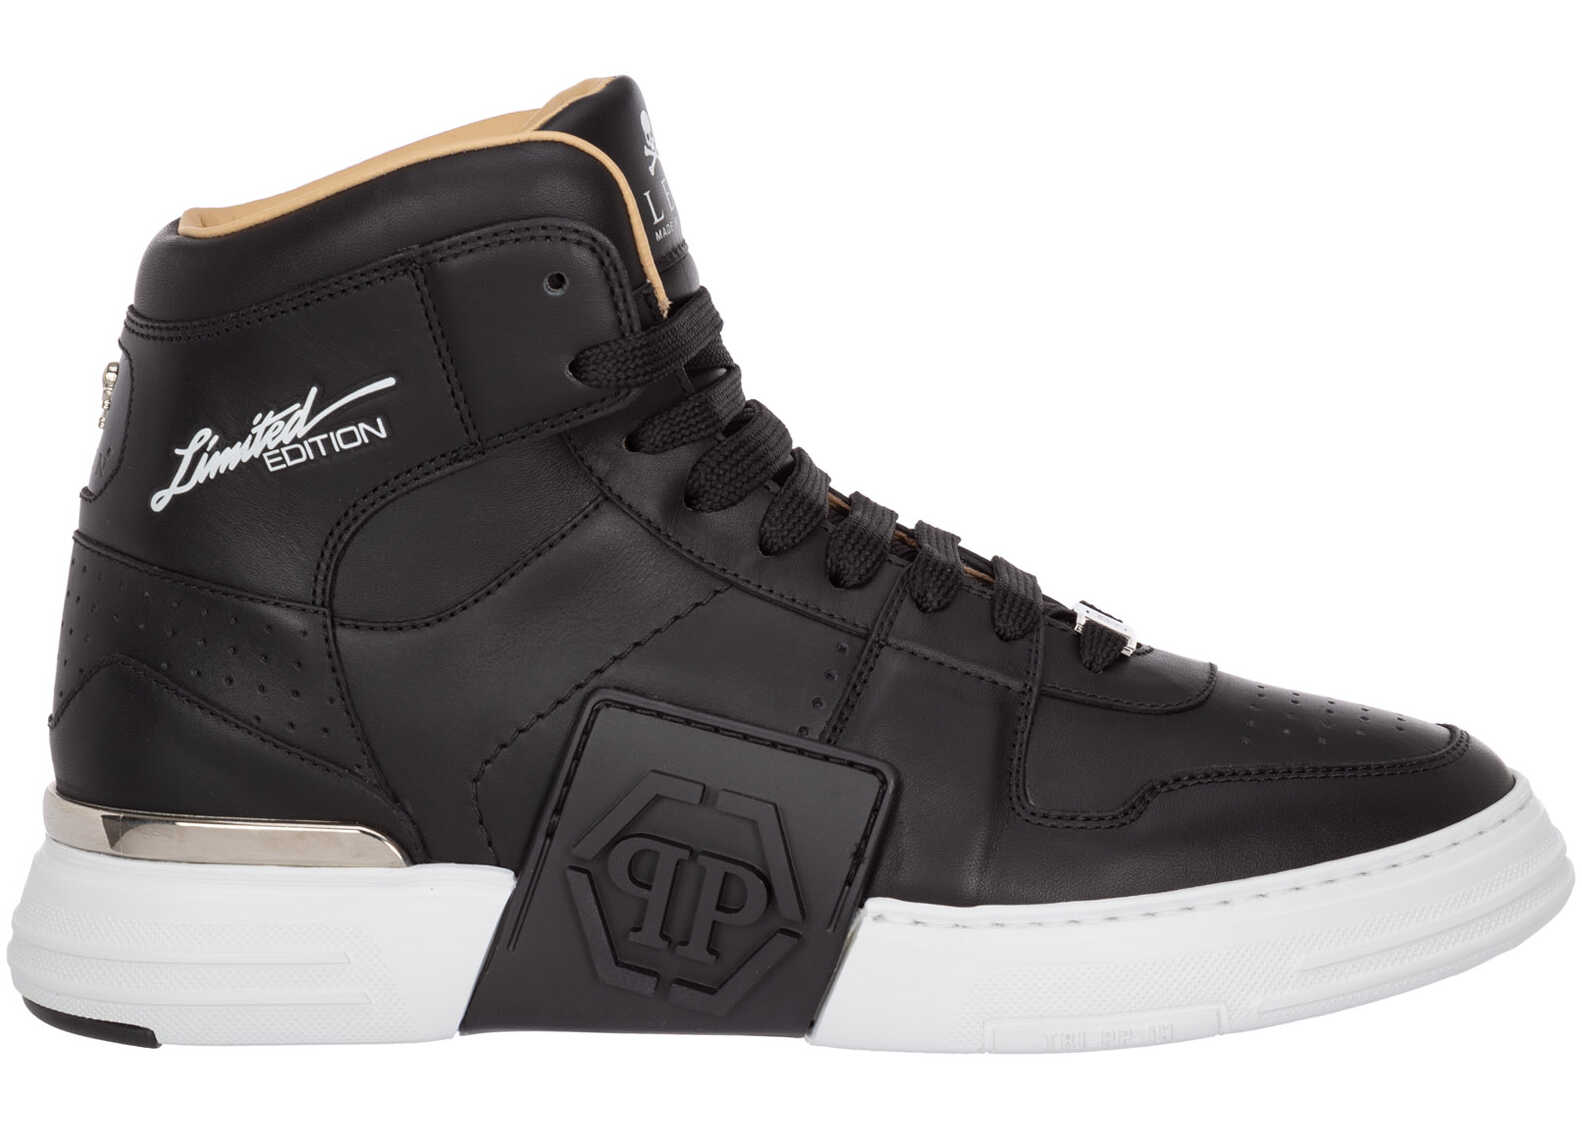 Philipp Plein Shoes High Top Leather Trainers Sneakers Phantom Kick$ SABS-MSC3374-PLE075N_02 Black